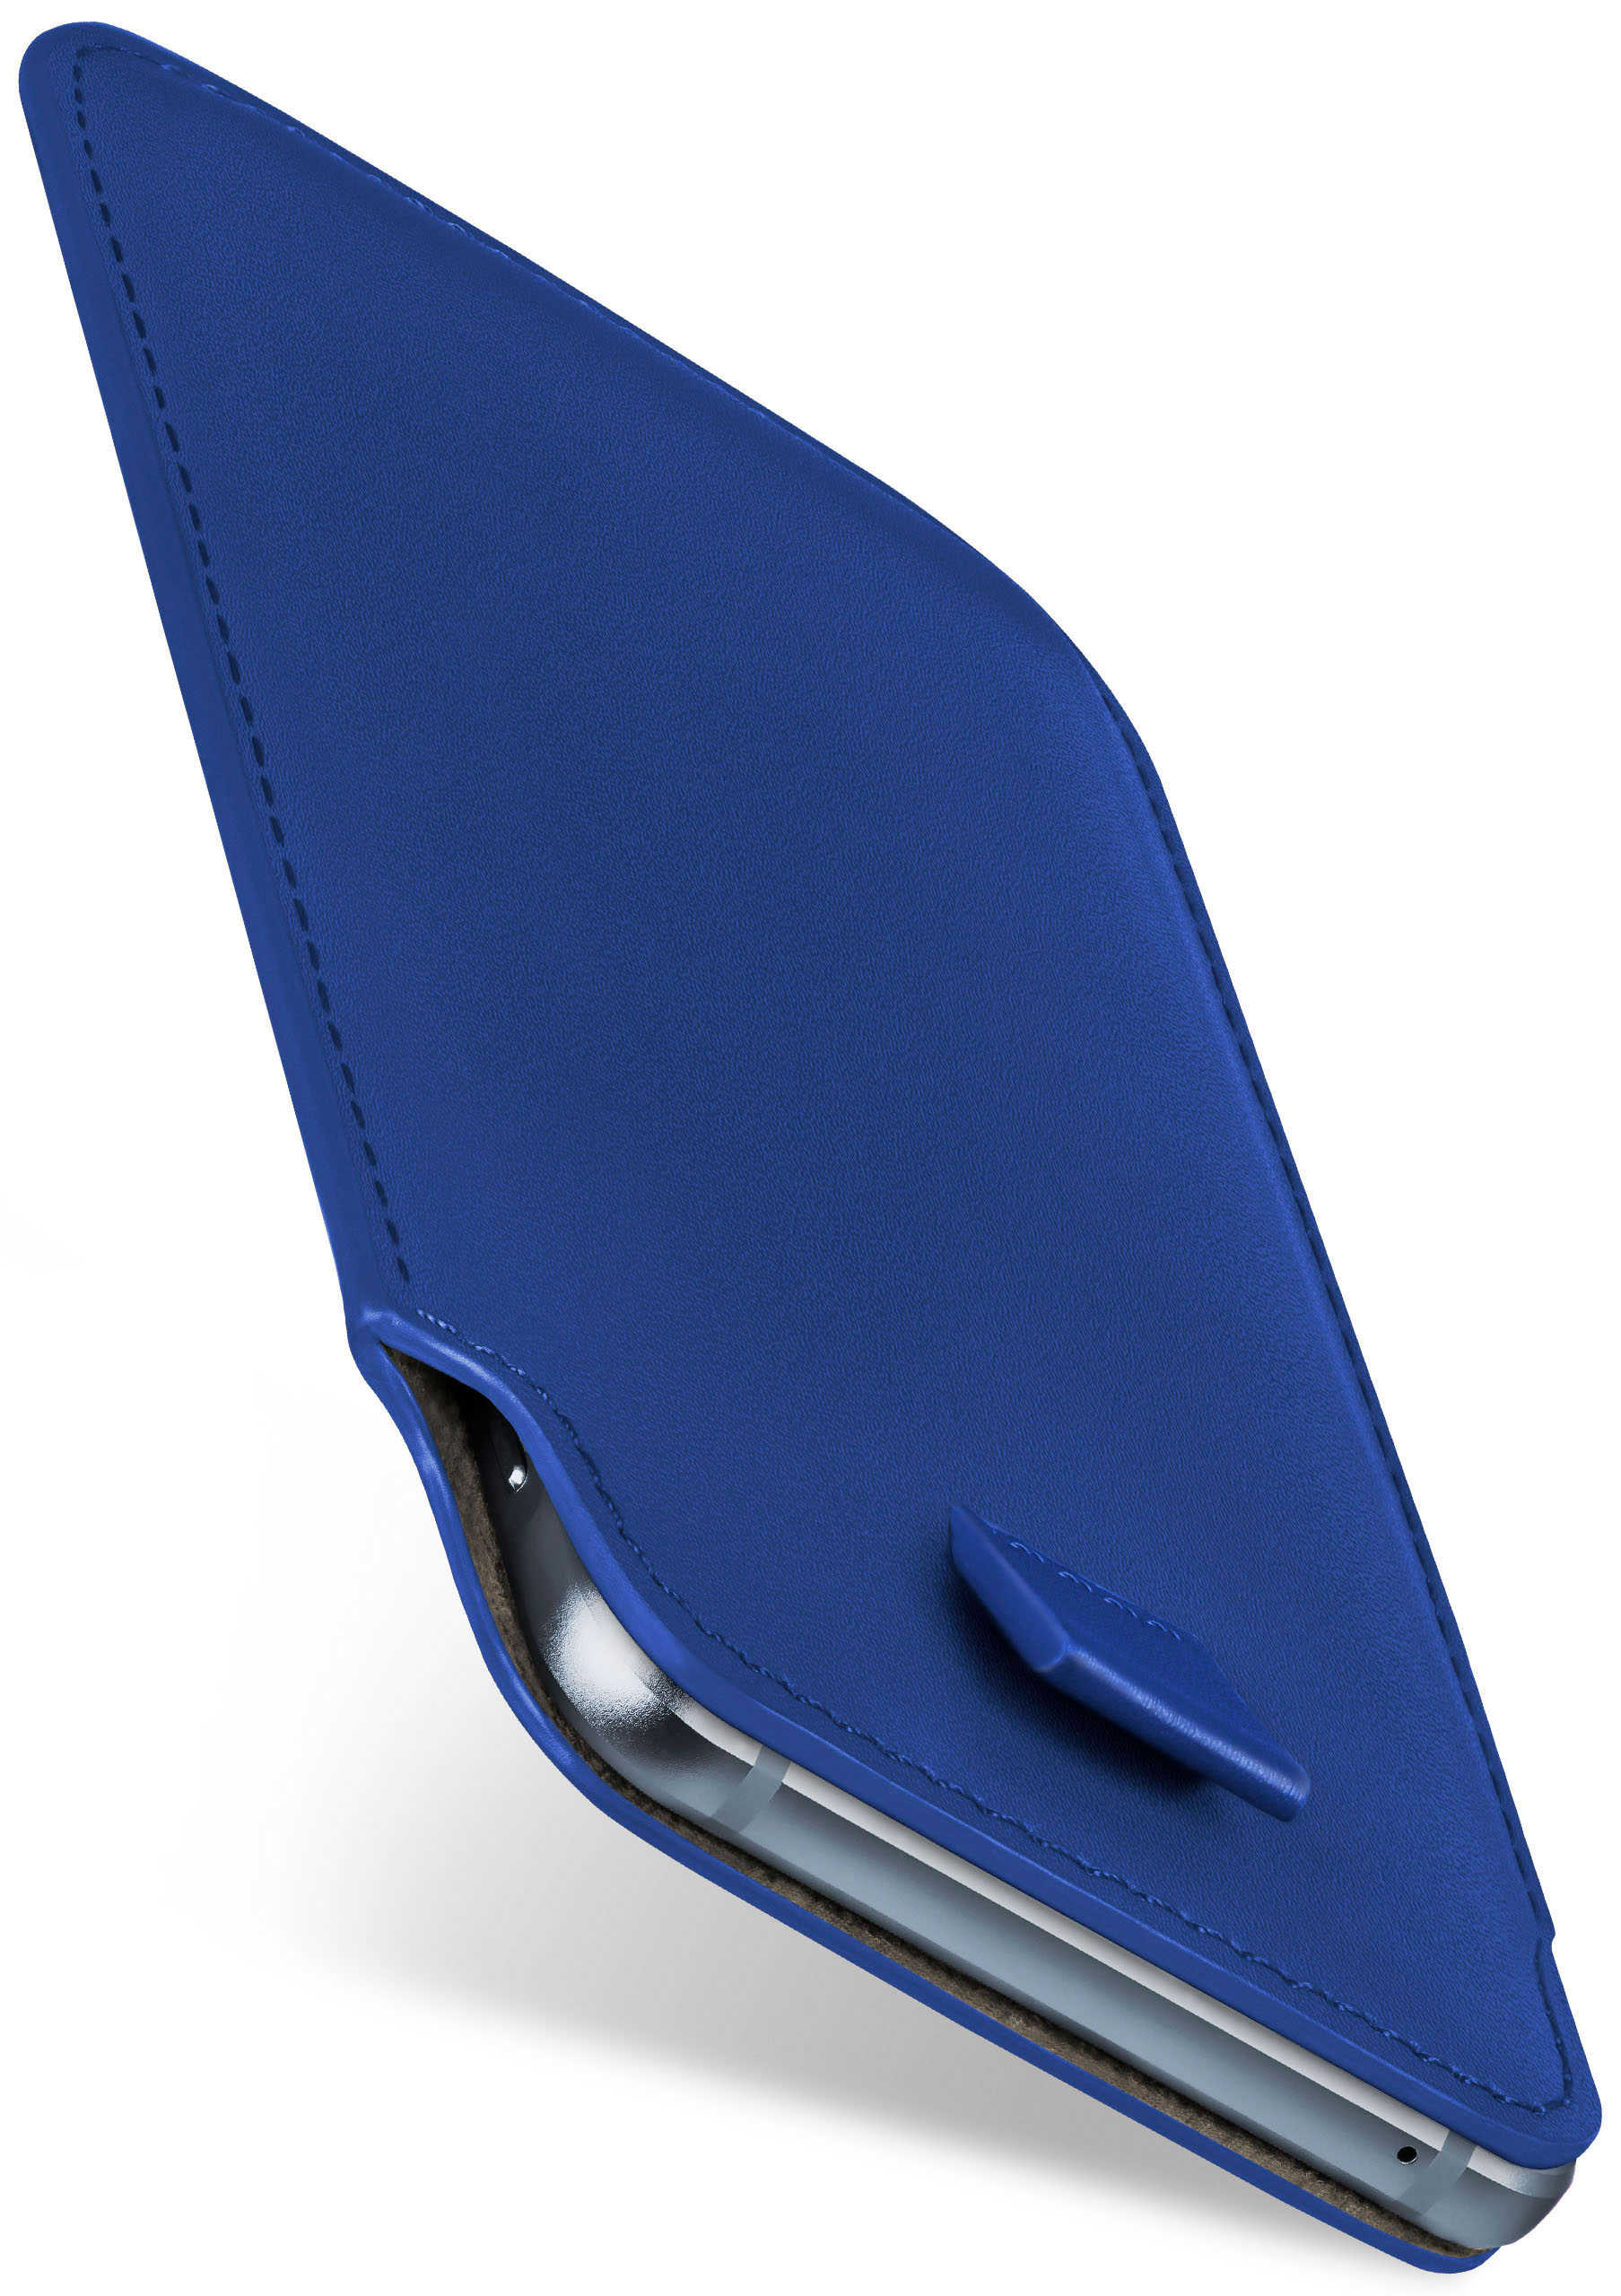 Slide Emporia, MOEX Full Royal-Blue Cover, Case, Eco,